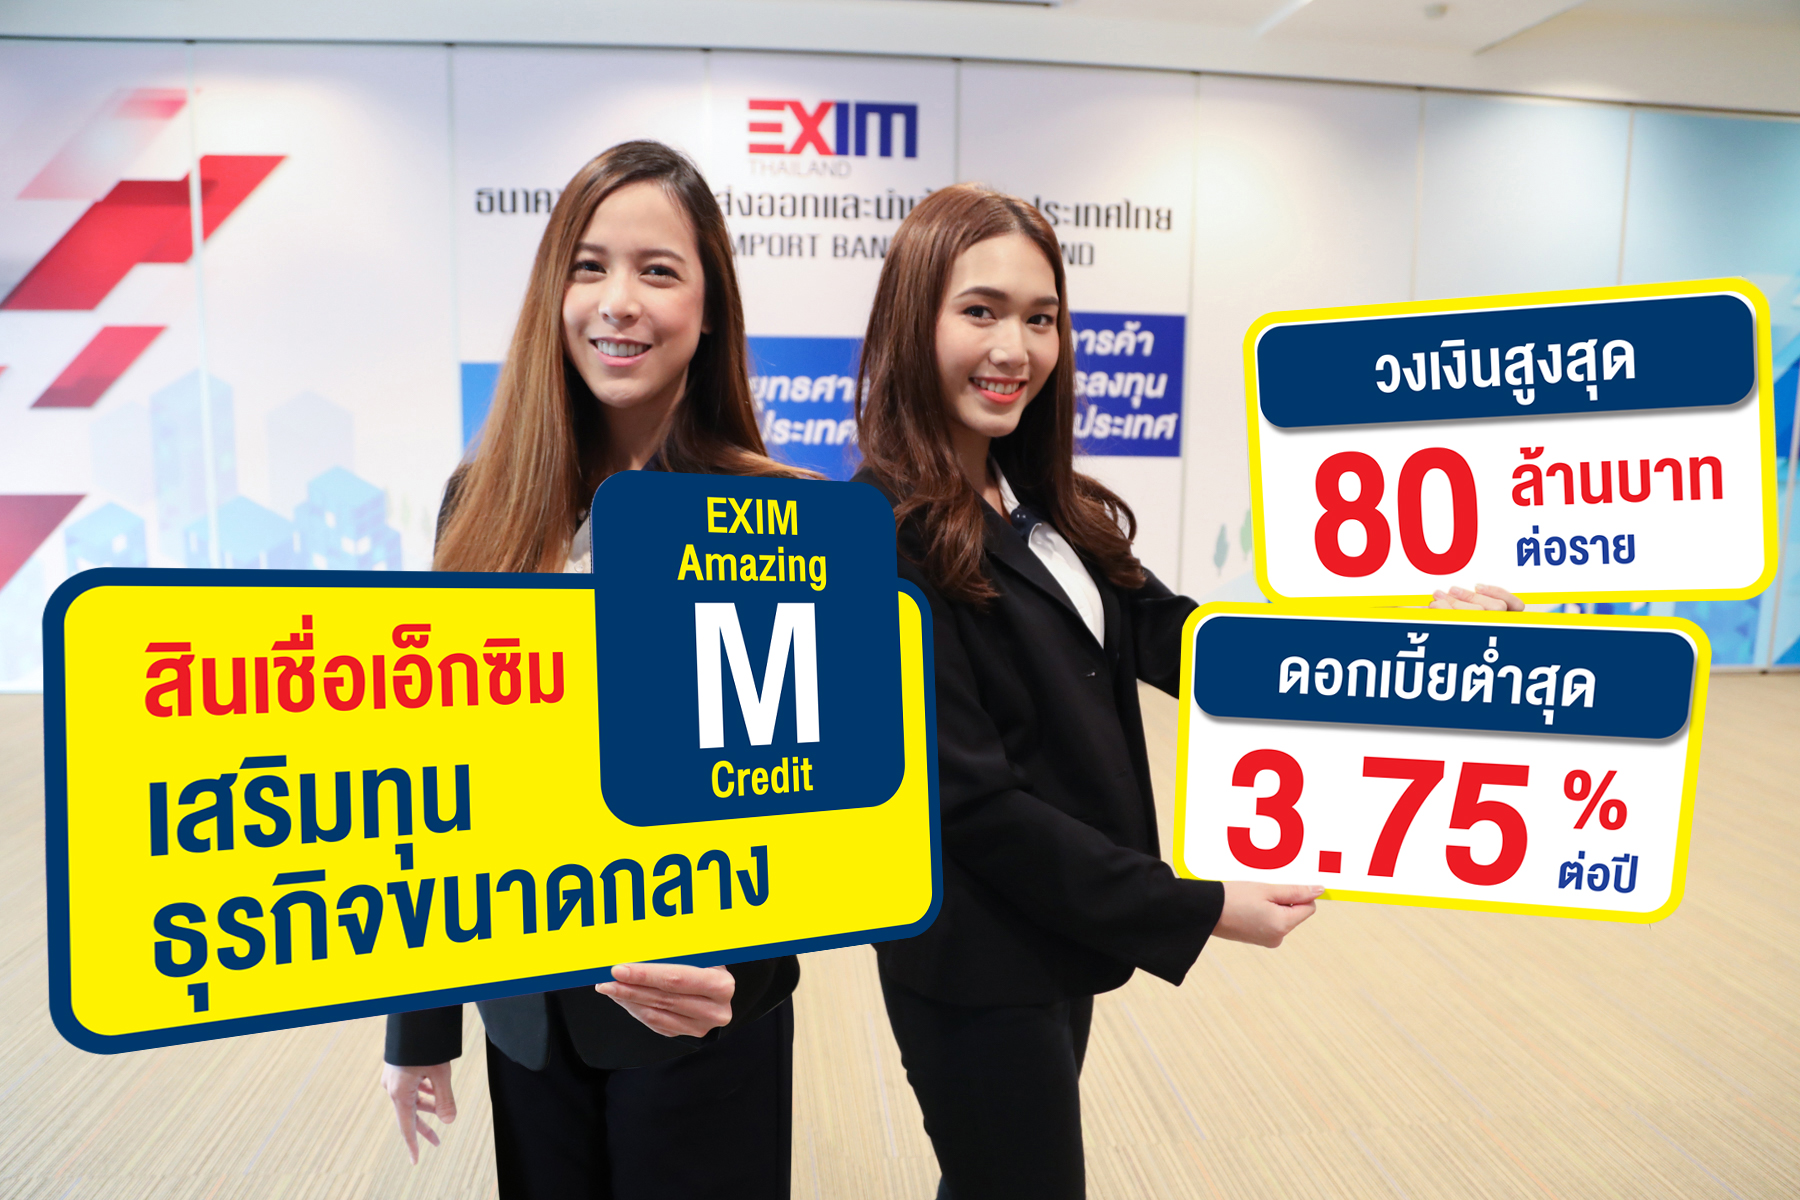 EXIM Thailand Launches “EXIM Amazing M Credit”  Enhancing Liquidity of Medium Entrepreneurs